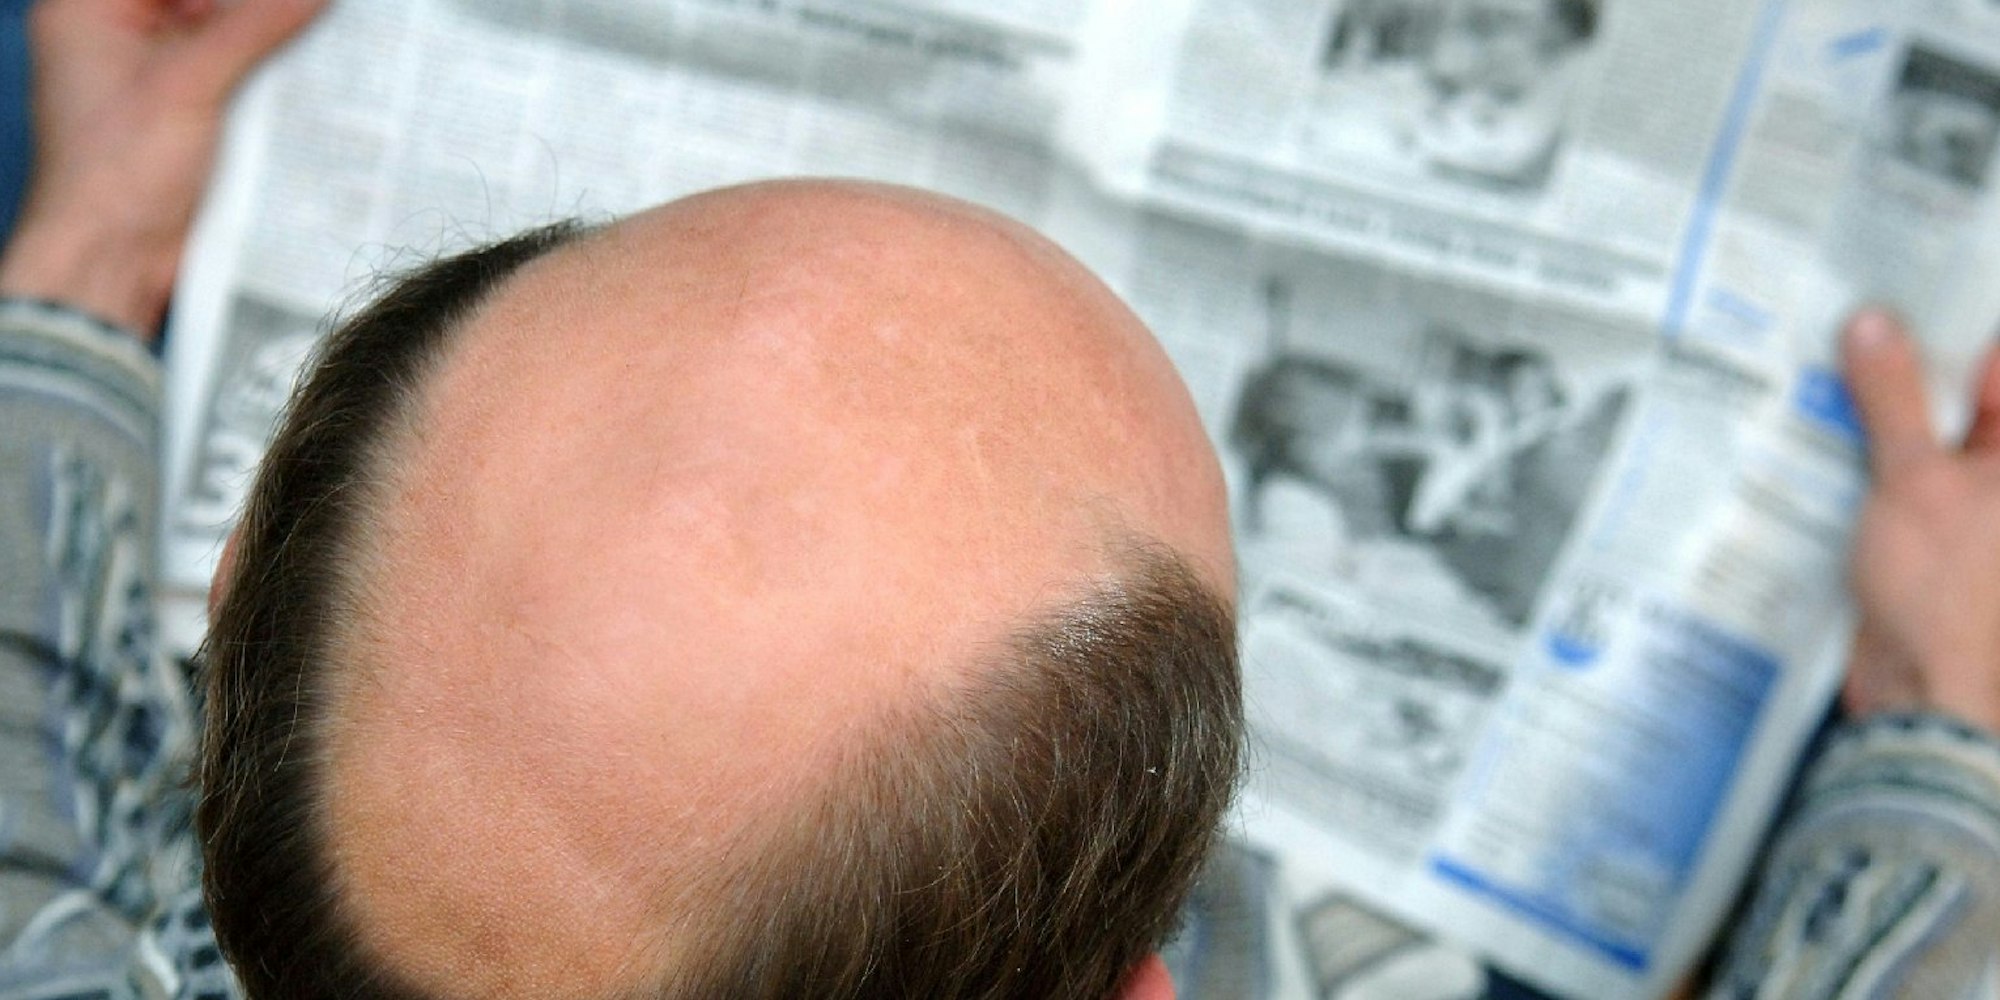 Erblich bedingter Haarausfall lässt sich bislang nicht aufhalten. Forscher haben nun erstmals auf kahler menschlicher Haut im Labor Haare sprießen lassen.